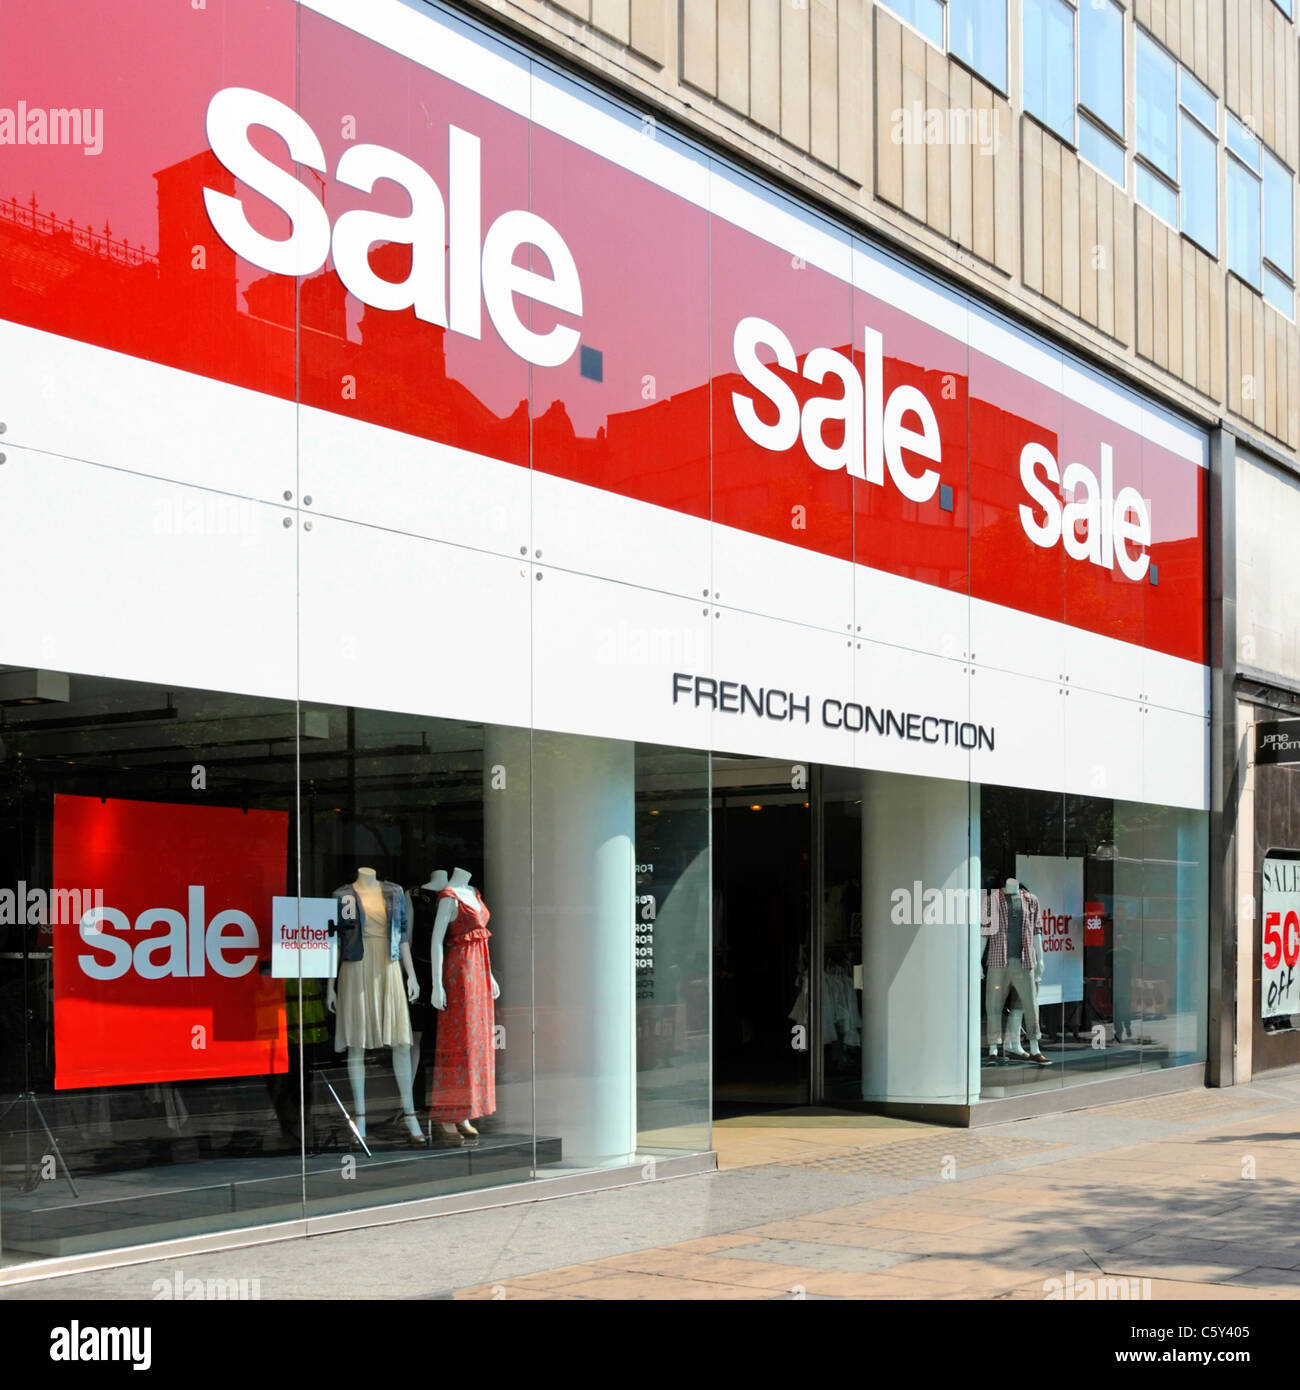 Les grands signes de vente au-dessus de entrée de connexion française retail business store shopping à Oxford Street West End de Londres Angleterre Royaume-uni Banque D'Images